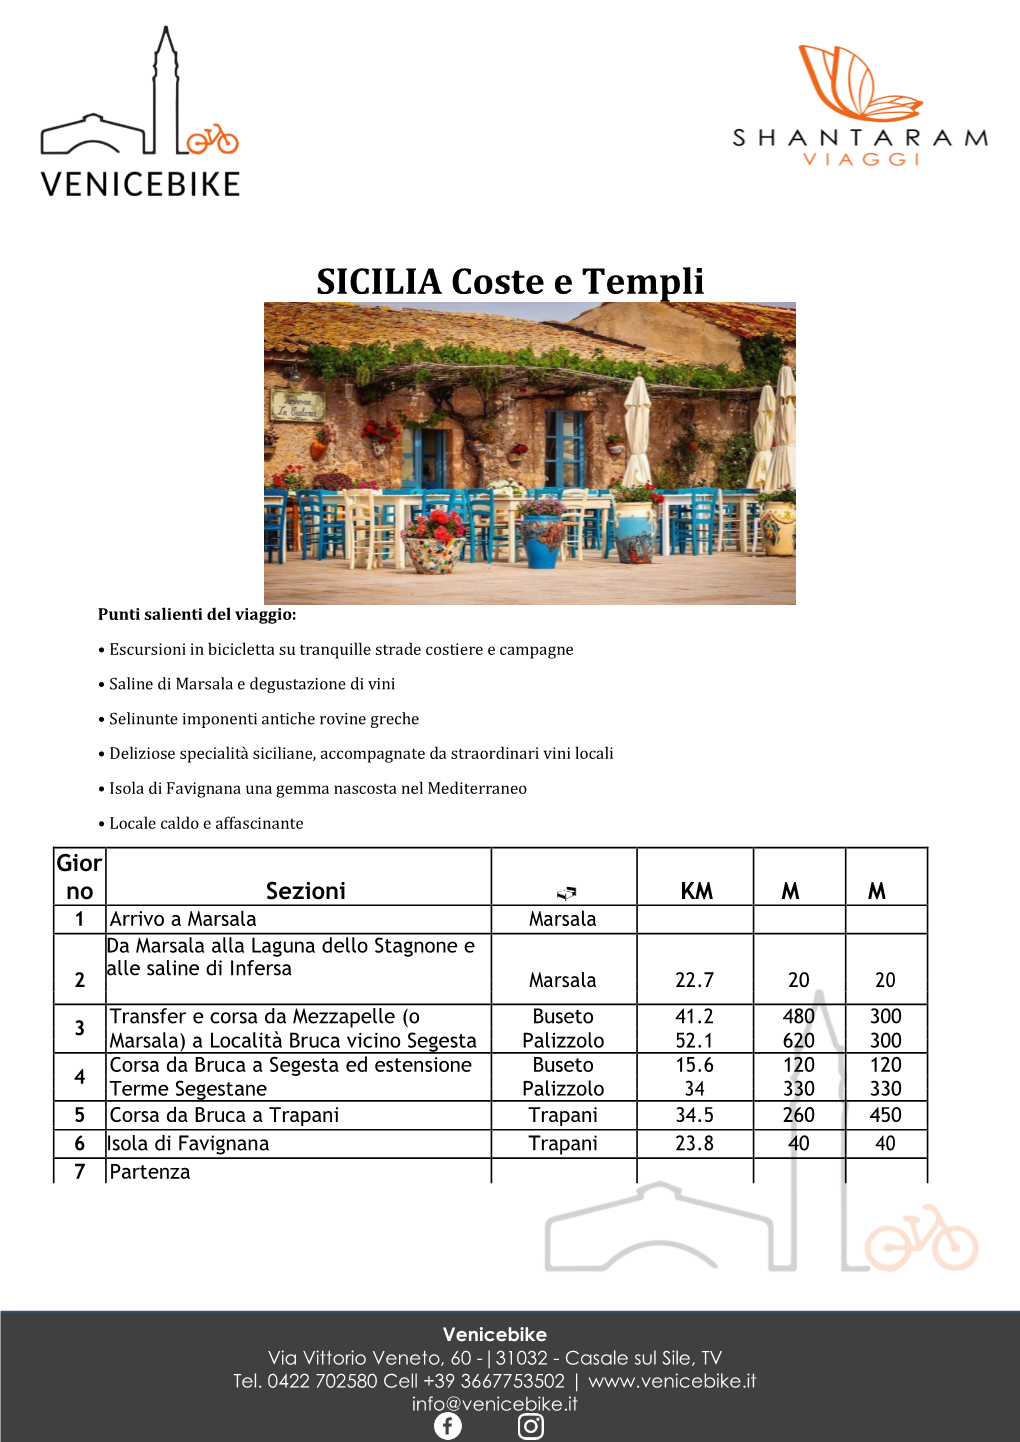 SICILIA Coste E Templi